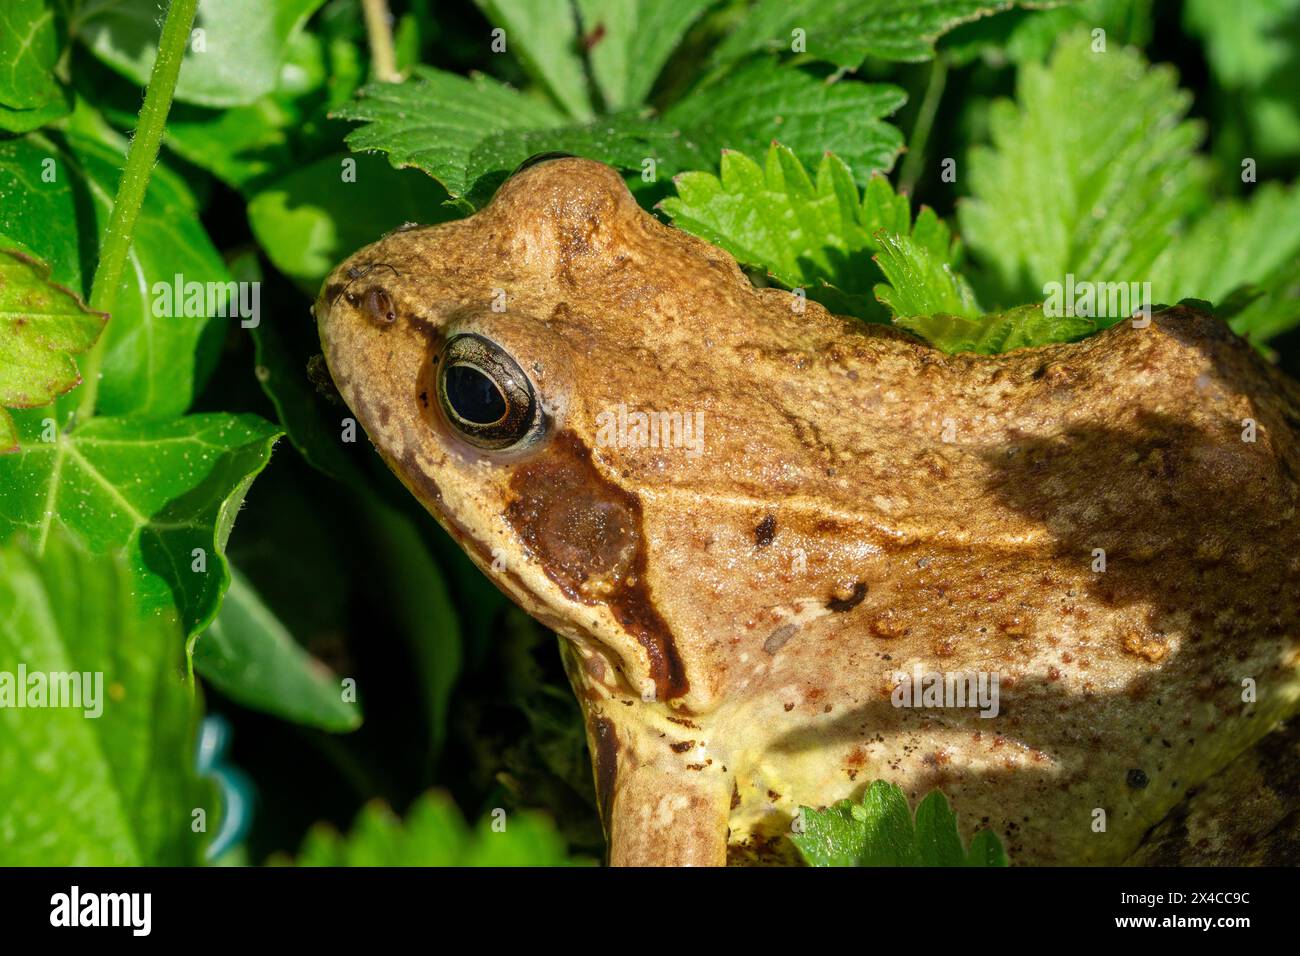 Primo piano della testa di una rana comune o rana erbosa (Rana temporaria) nascosta nel prato Foto Stock